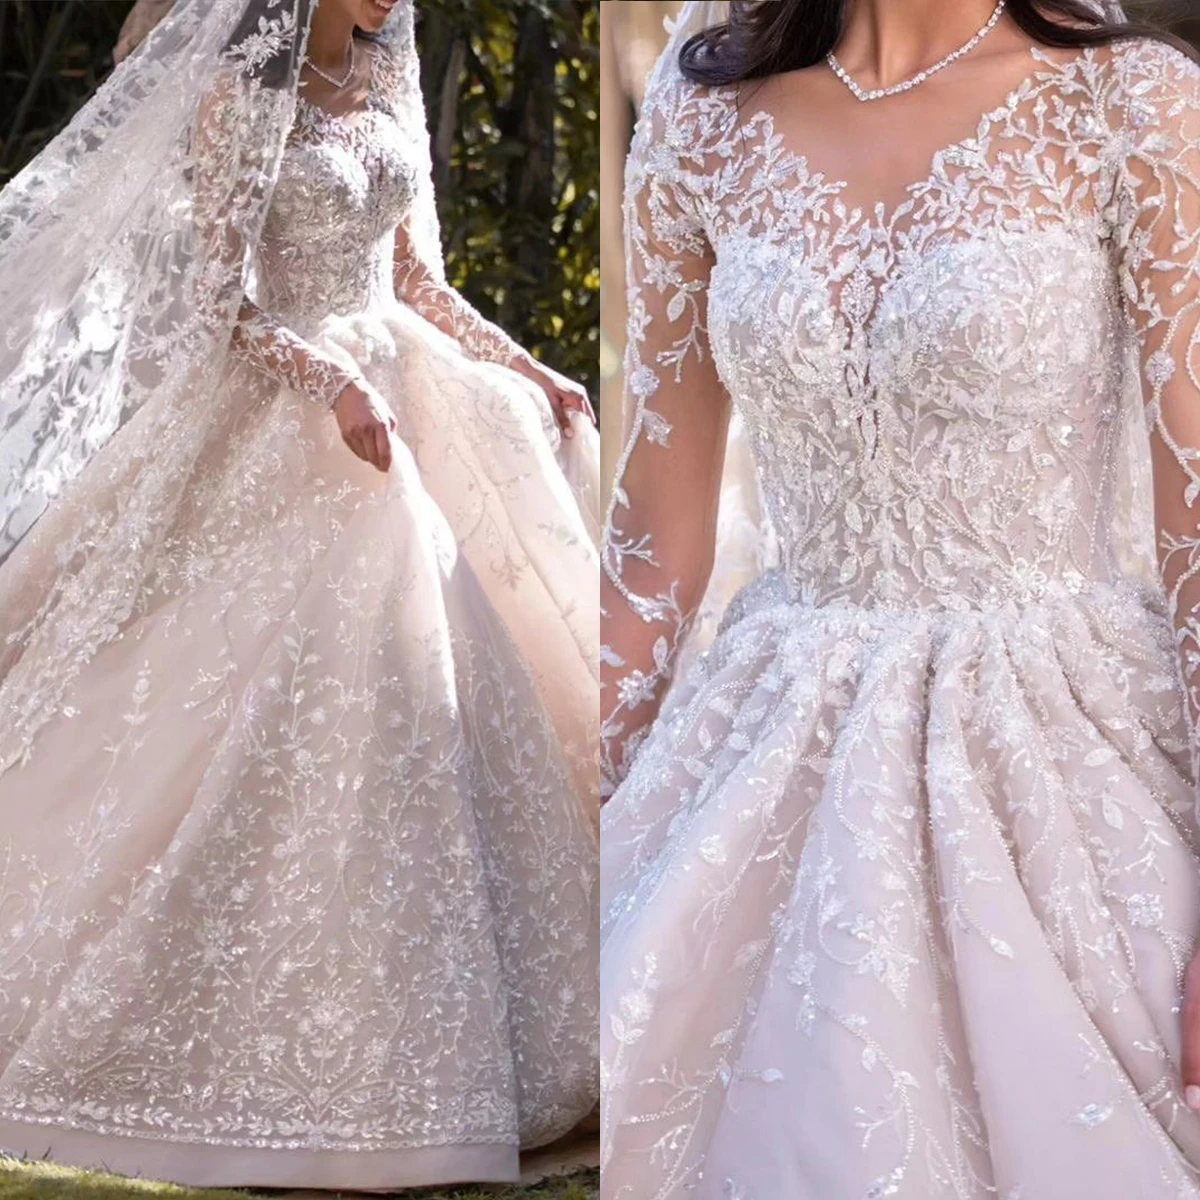 

Exquisite Ball Gown Wedding Dresses With Veil Lace Applique Sequins Bridal Gown Dubai Arabic Dress Vestido De Novia Sweep Train